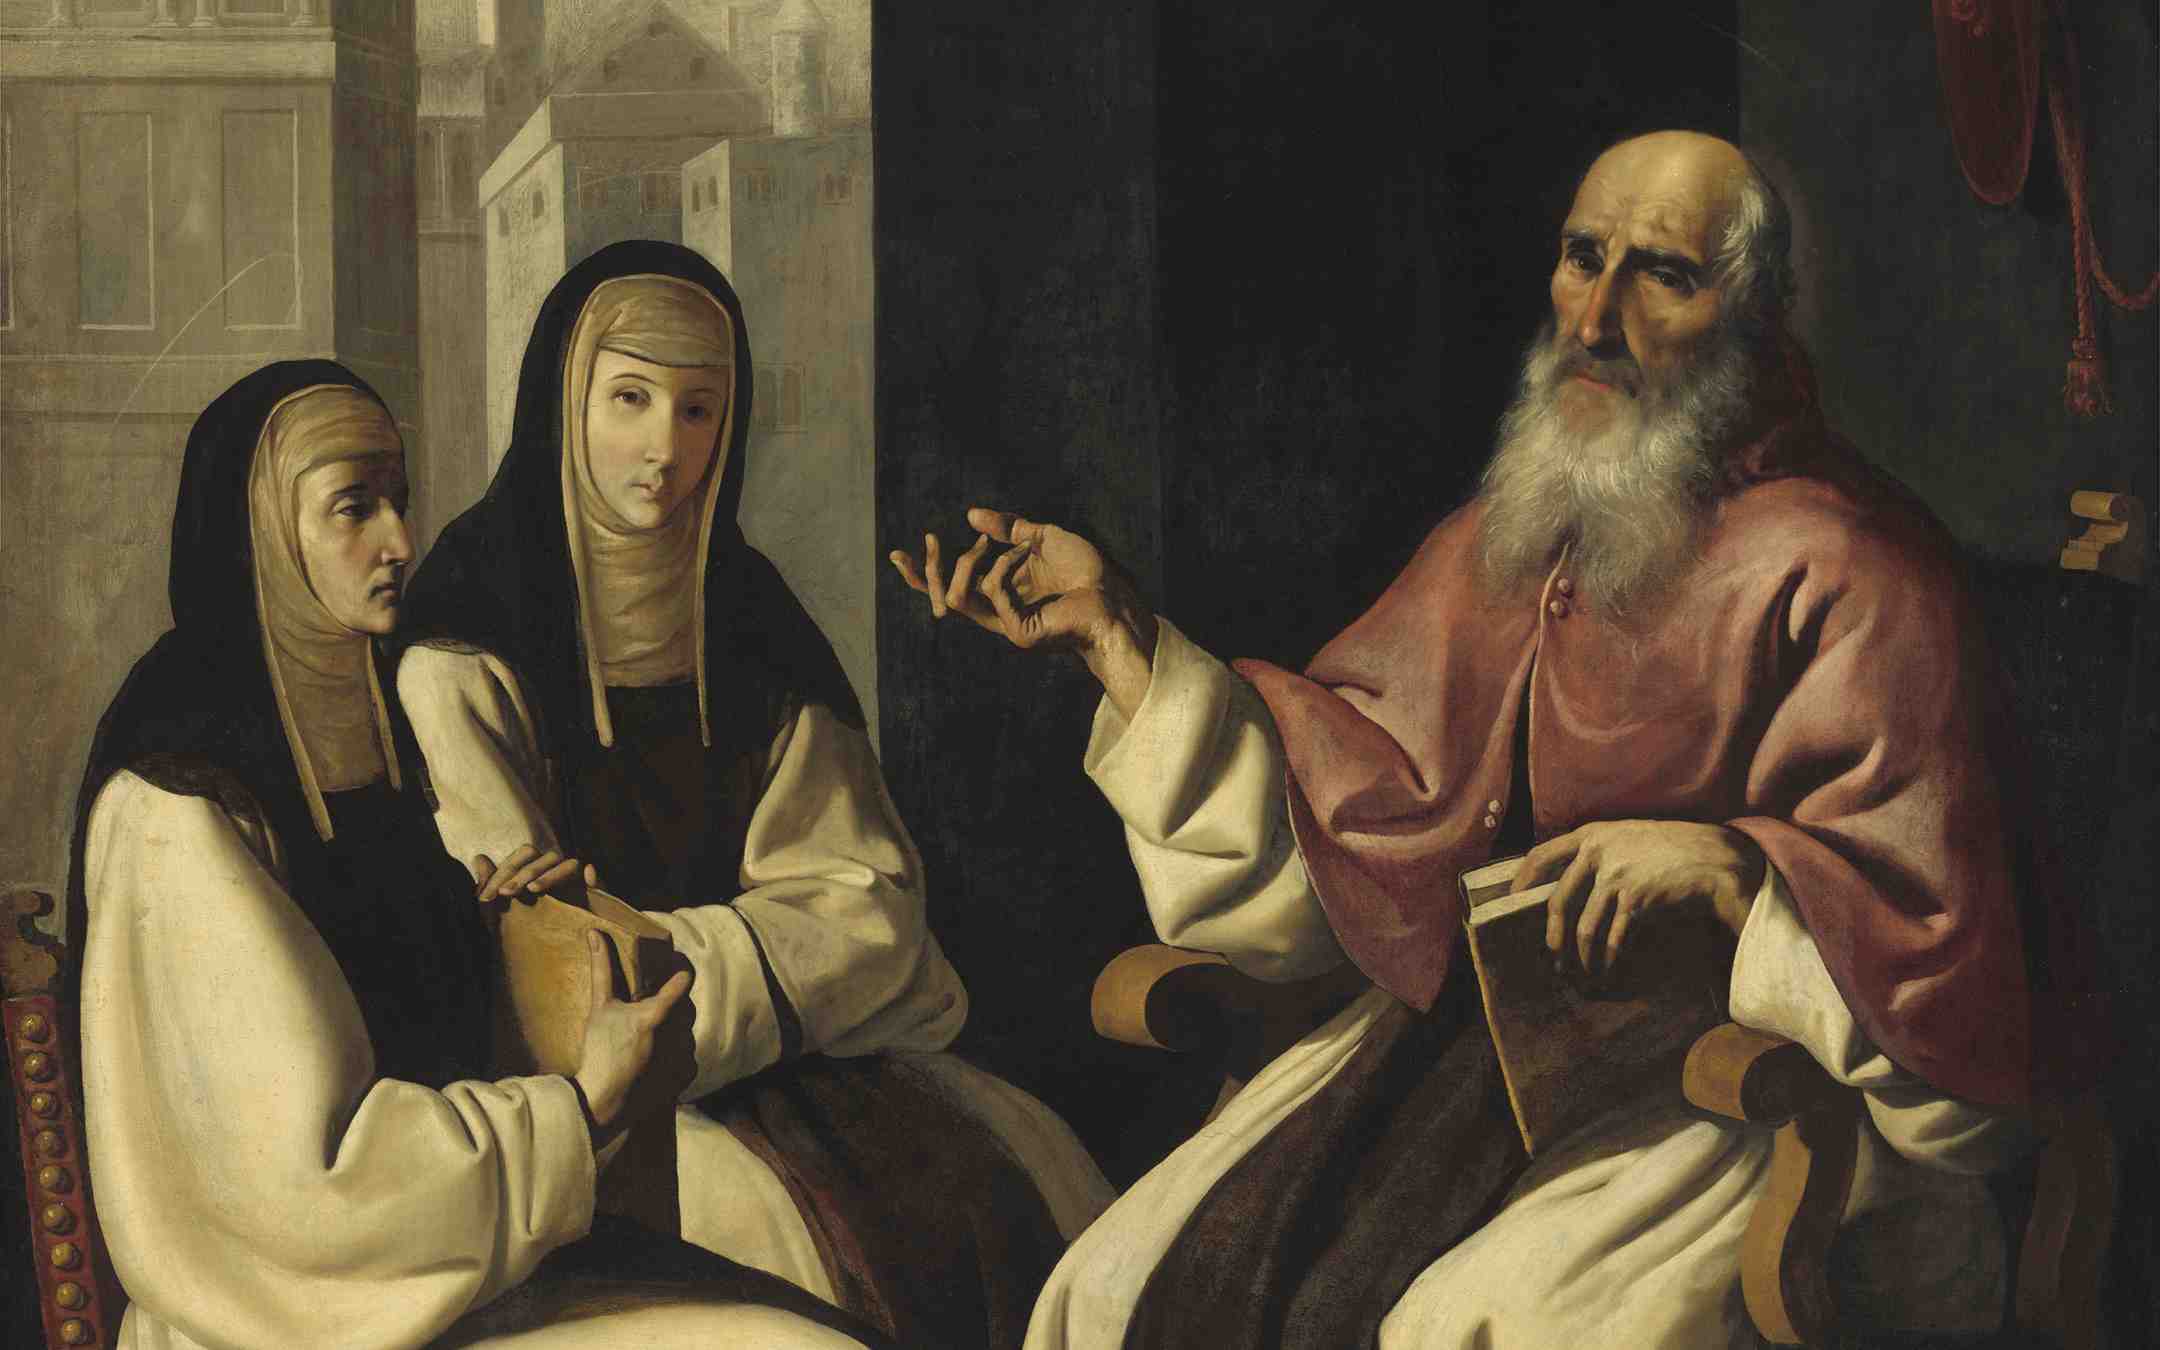 Pyhä Paula ja tytär Eustochium kuvattuna yhdessä Pyhän Jeromen kanssa istumassa 1600-luvun maalauksessa